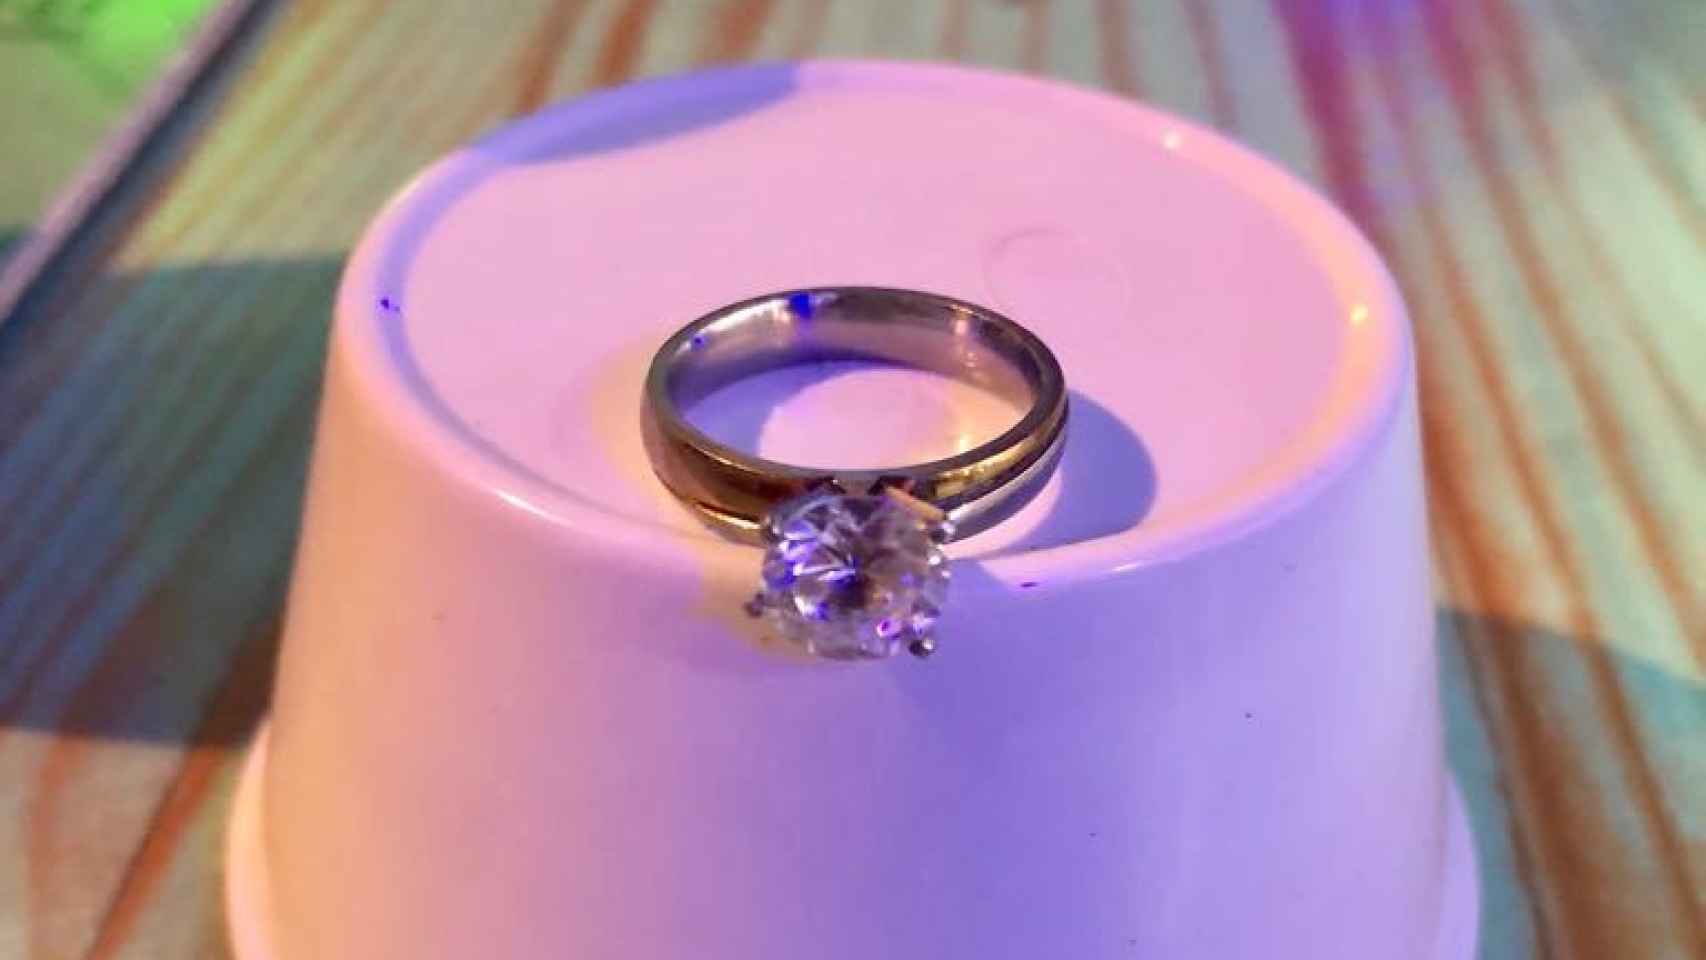 El anillo de compromiso que le ha regalado a Liv.